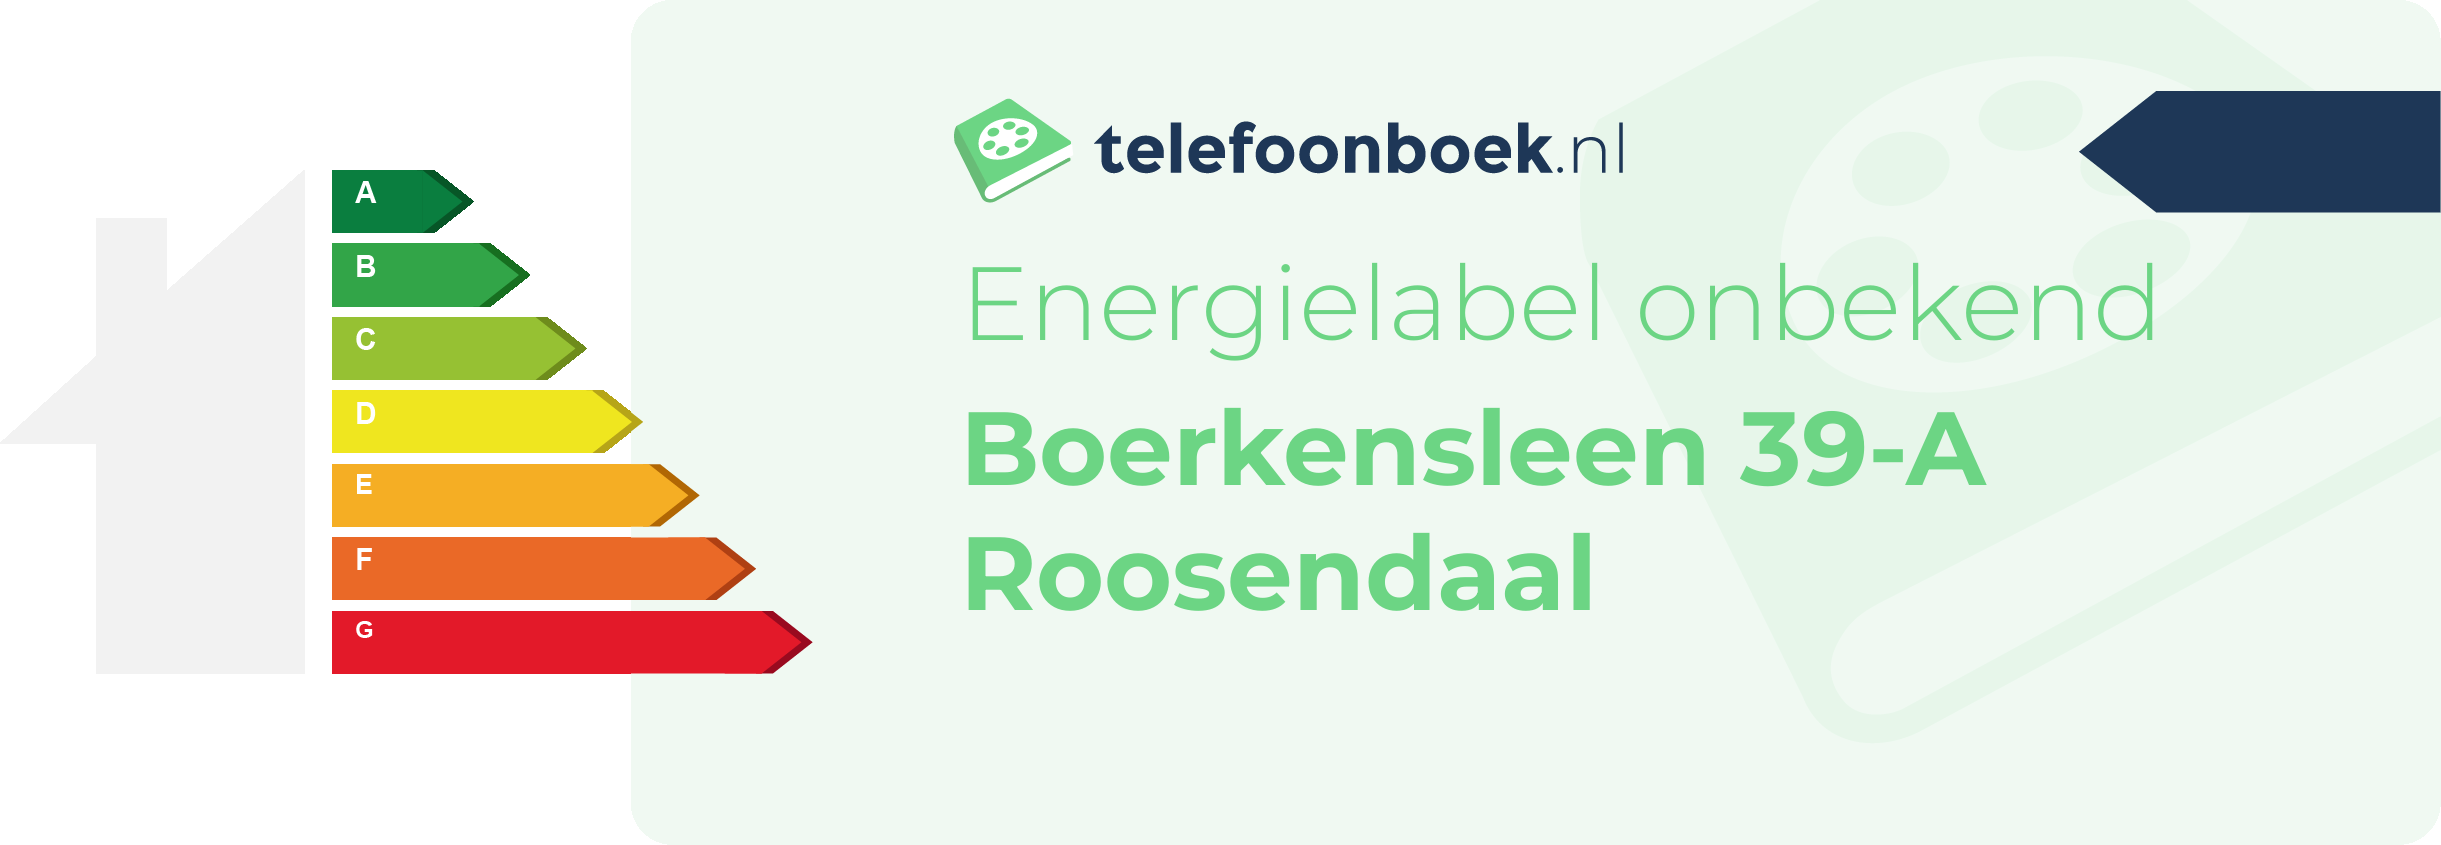 Energielabel Boerkensleen 39-A Roosendaal